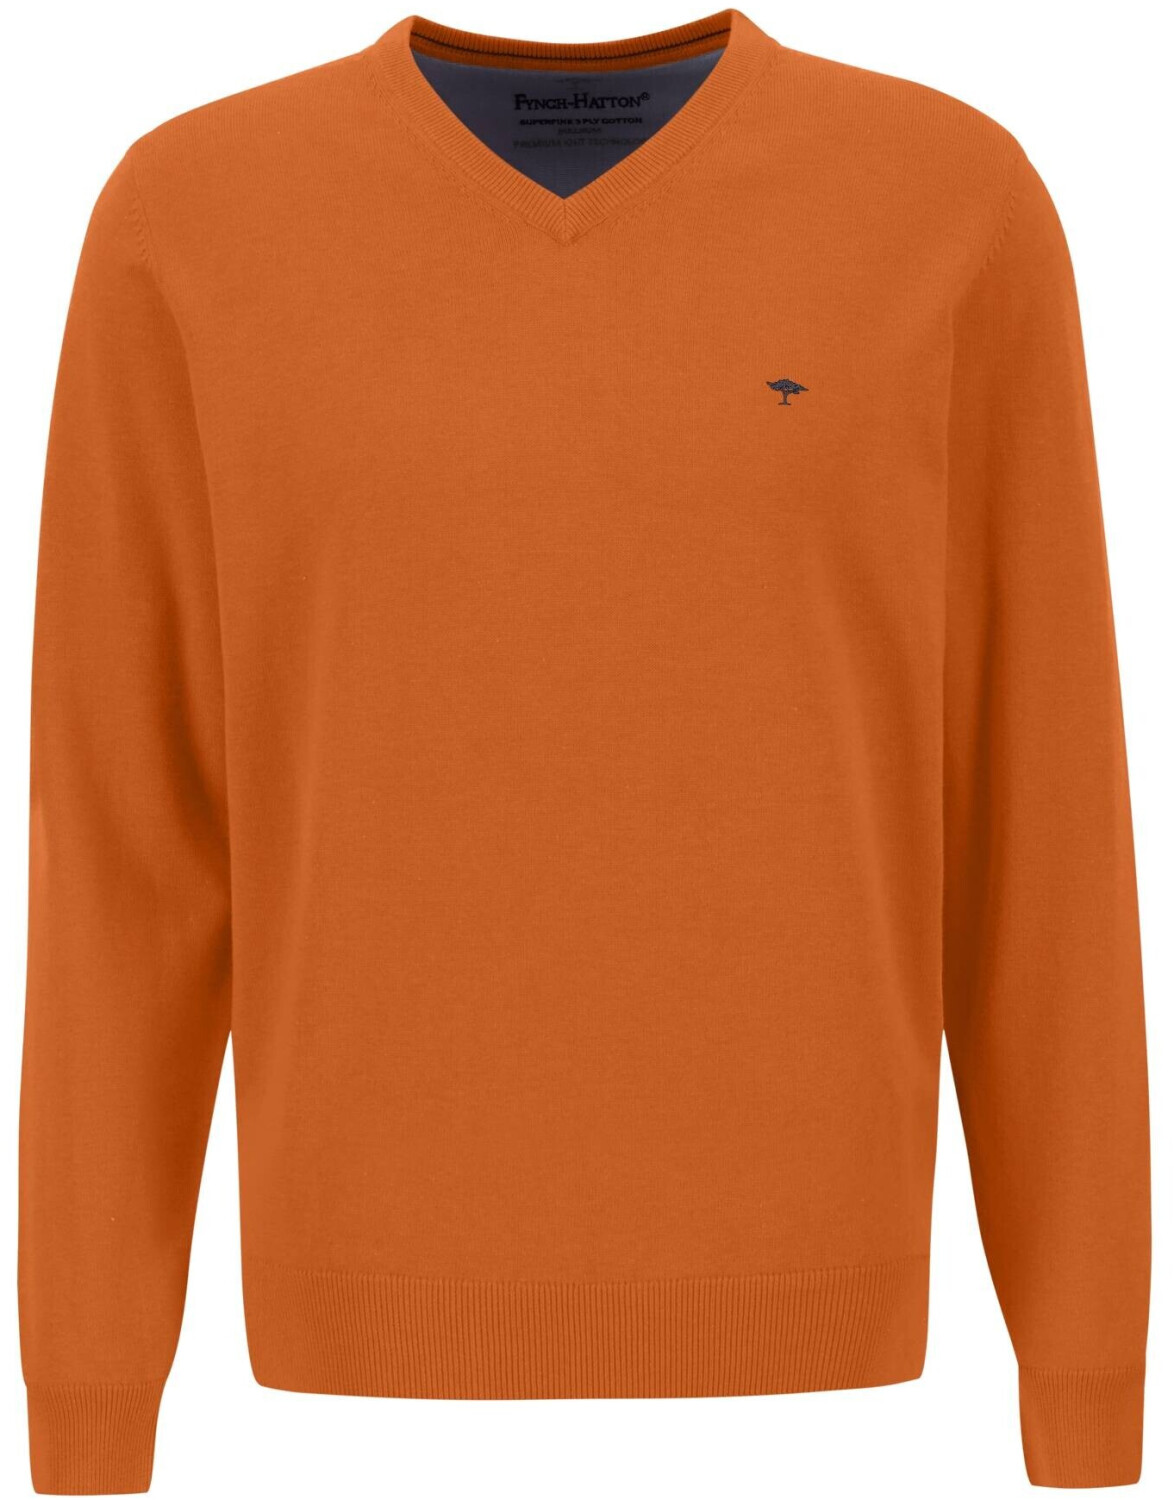 Fynch-Hatton V-Neck € 46,10 Preisvergleich orange (1314211-210) ab bei burnt |